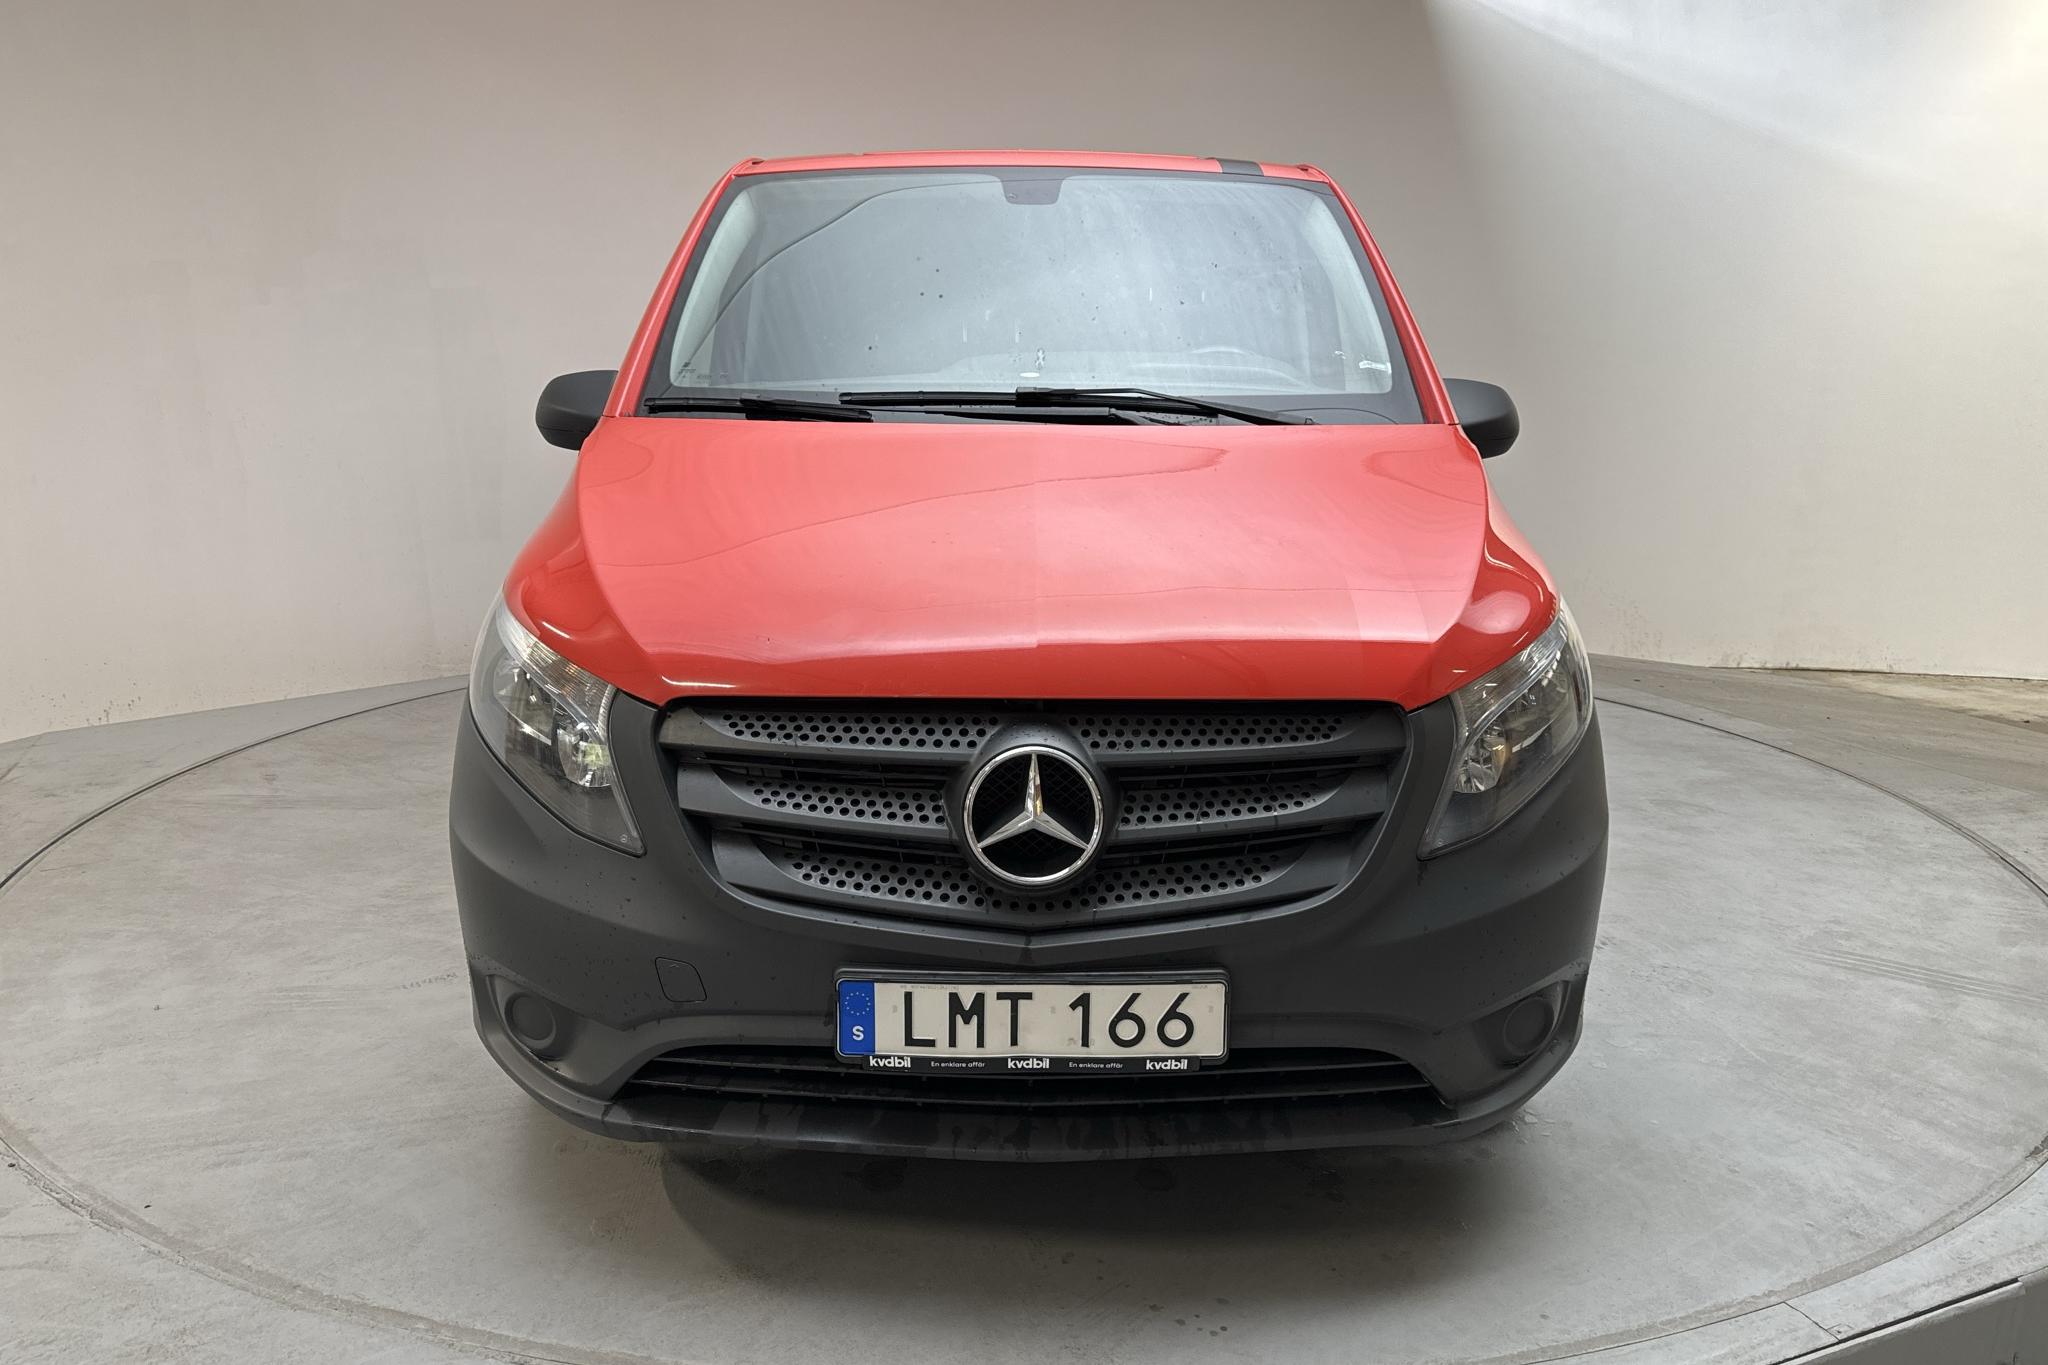 Mercedes Vito 114 CDI W640 (136hk) - 90 740 km - Automatic - red - 2018